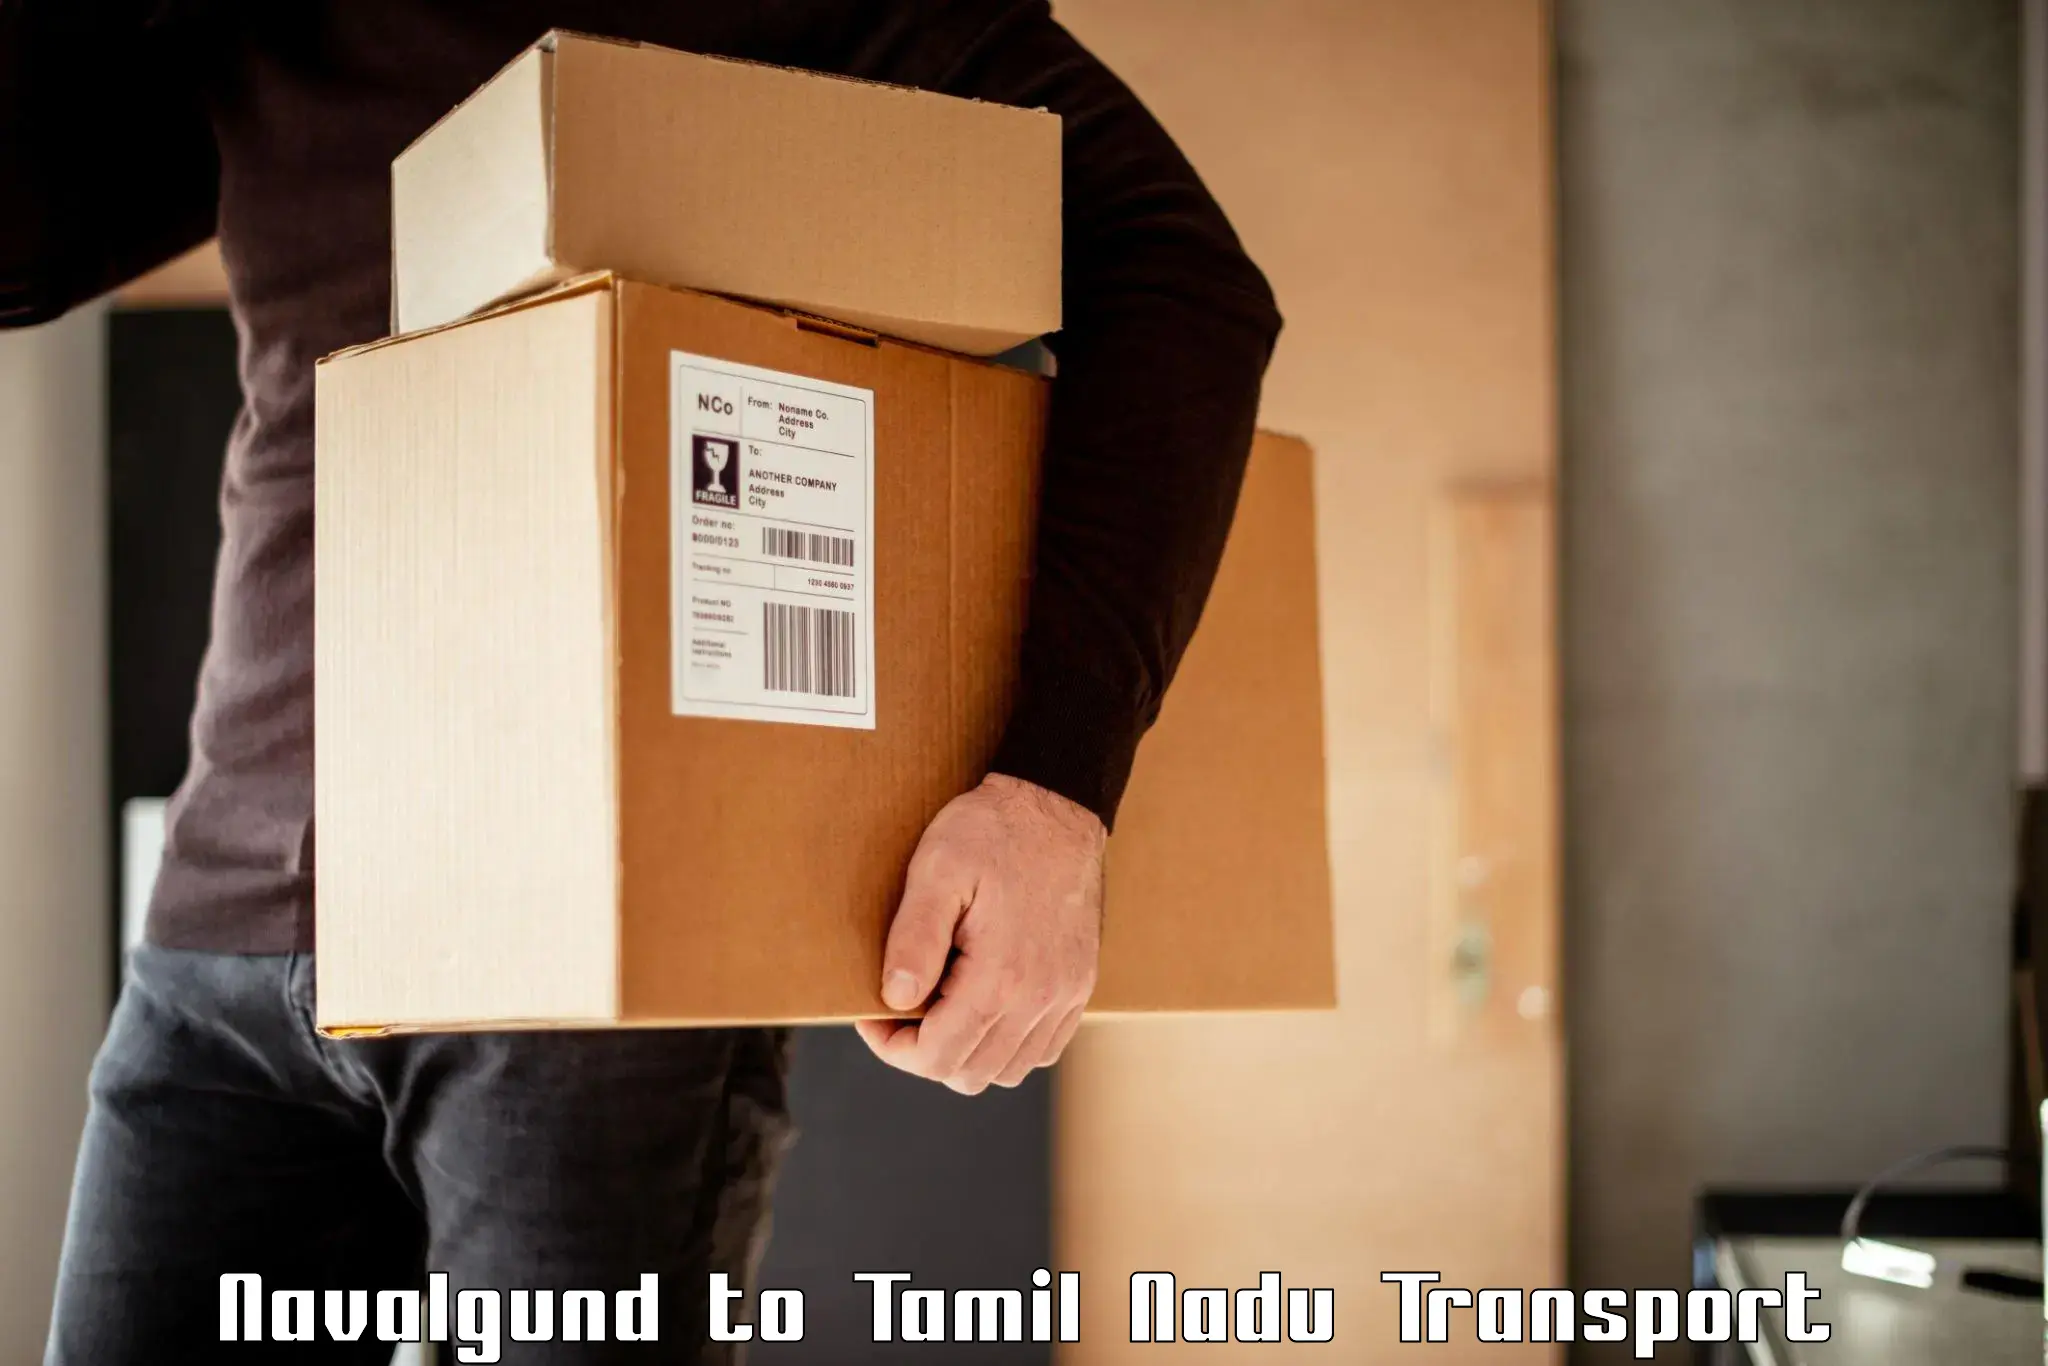 Air freight transport services Navalgund to Tirunelveli